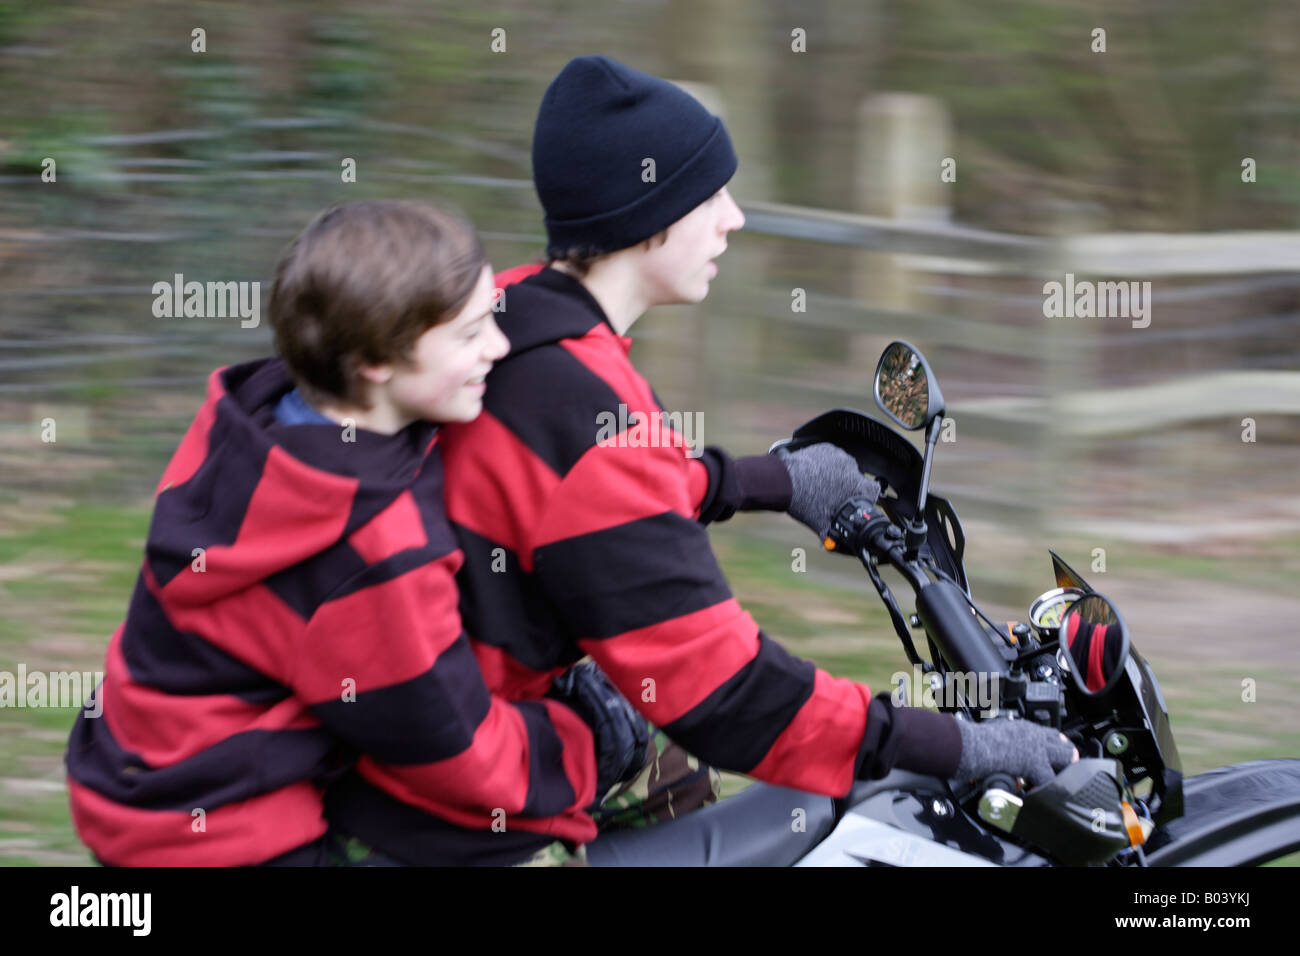 Zwei jungen auf einem Motorrad in einem Feld Stockfoto